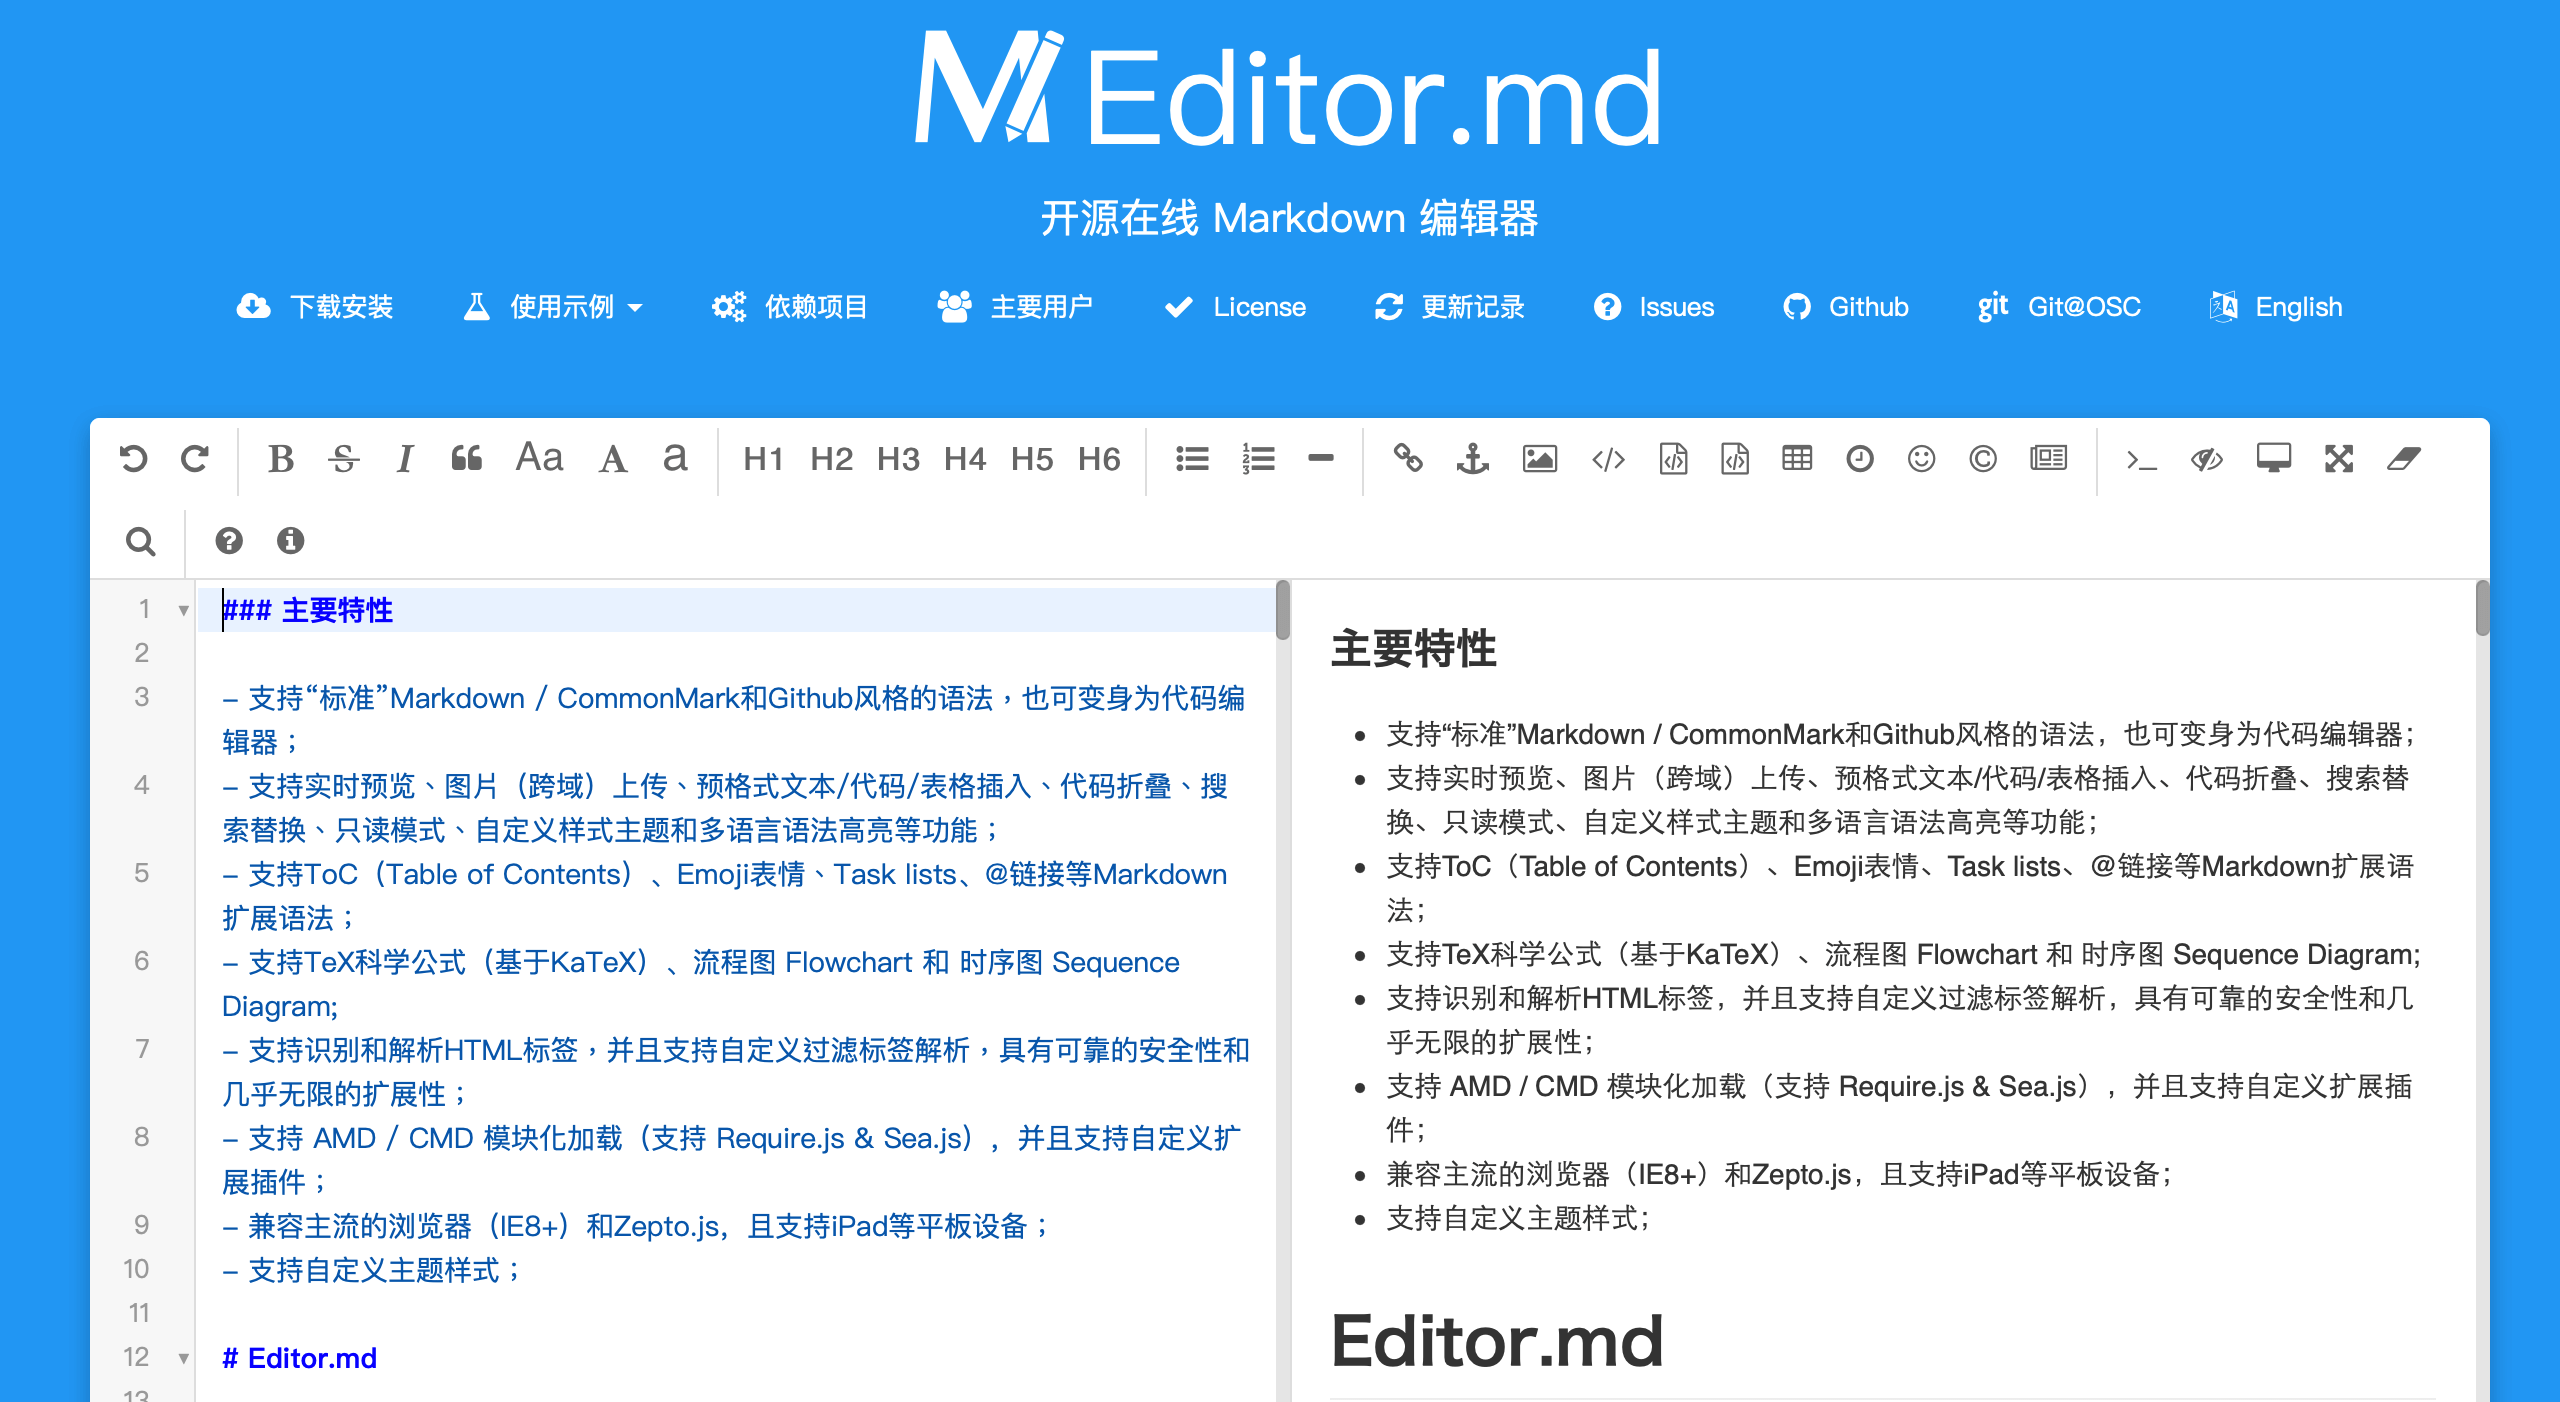 Editor.md 作者網站